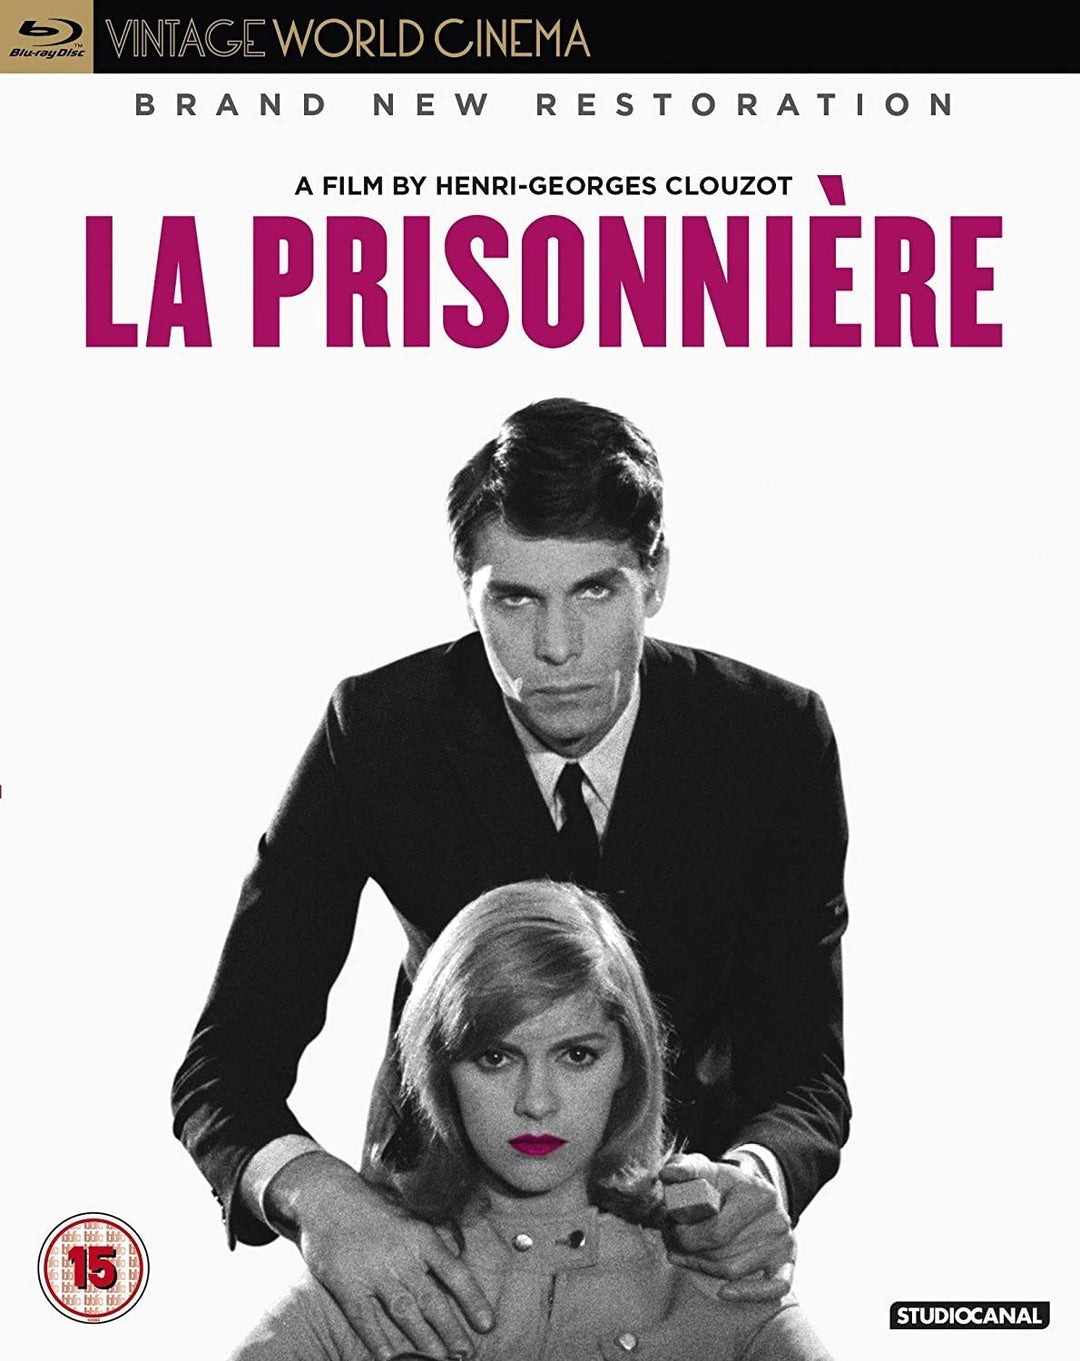 La Prisonniere – Drama [Blu-ray]